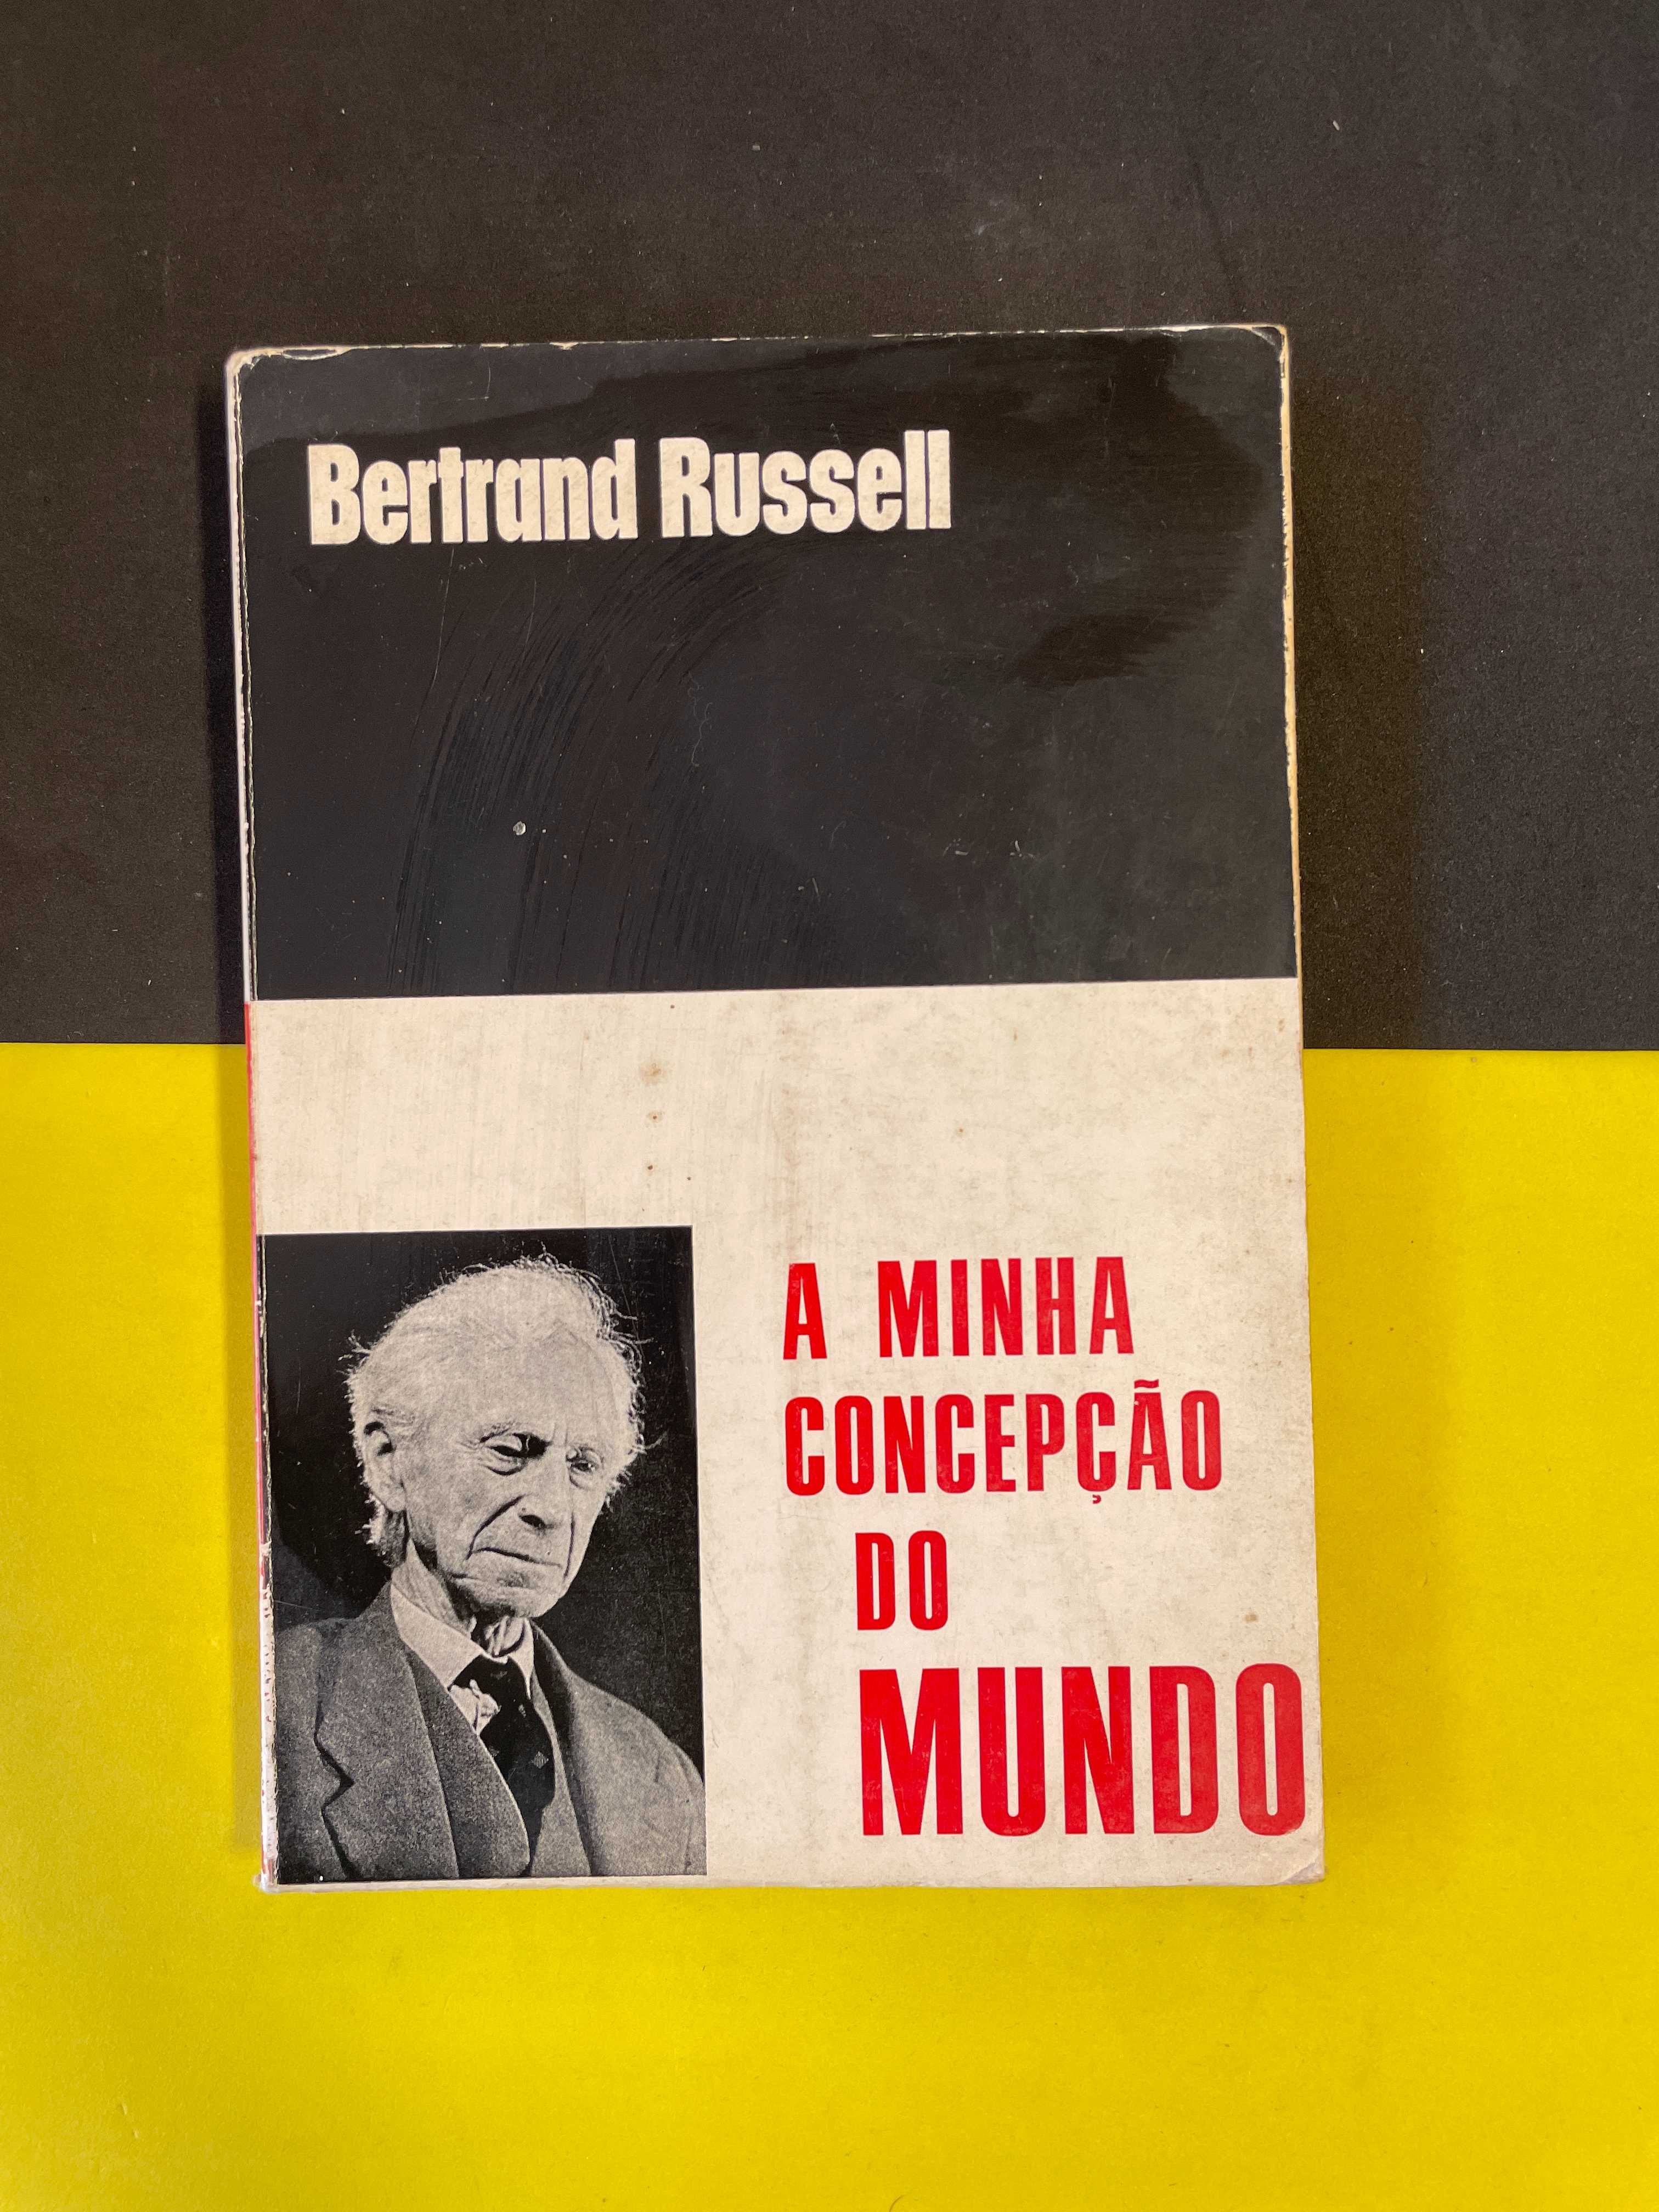 Bertrand Russell - A Minha concepção do Mundo